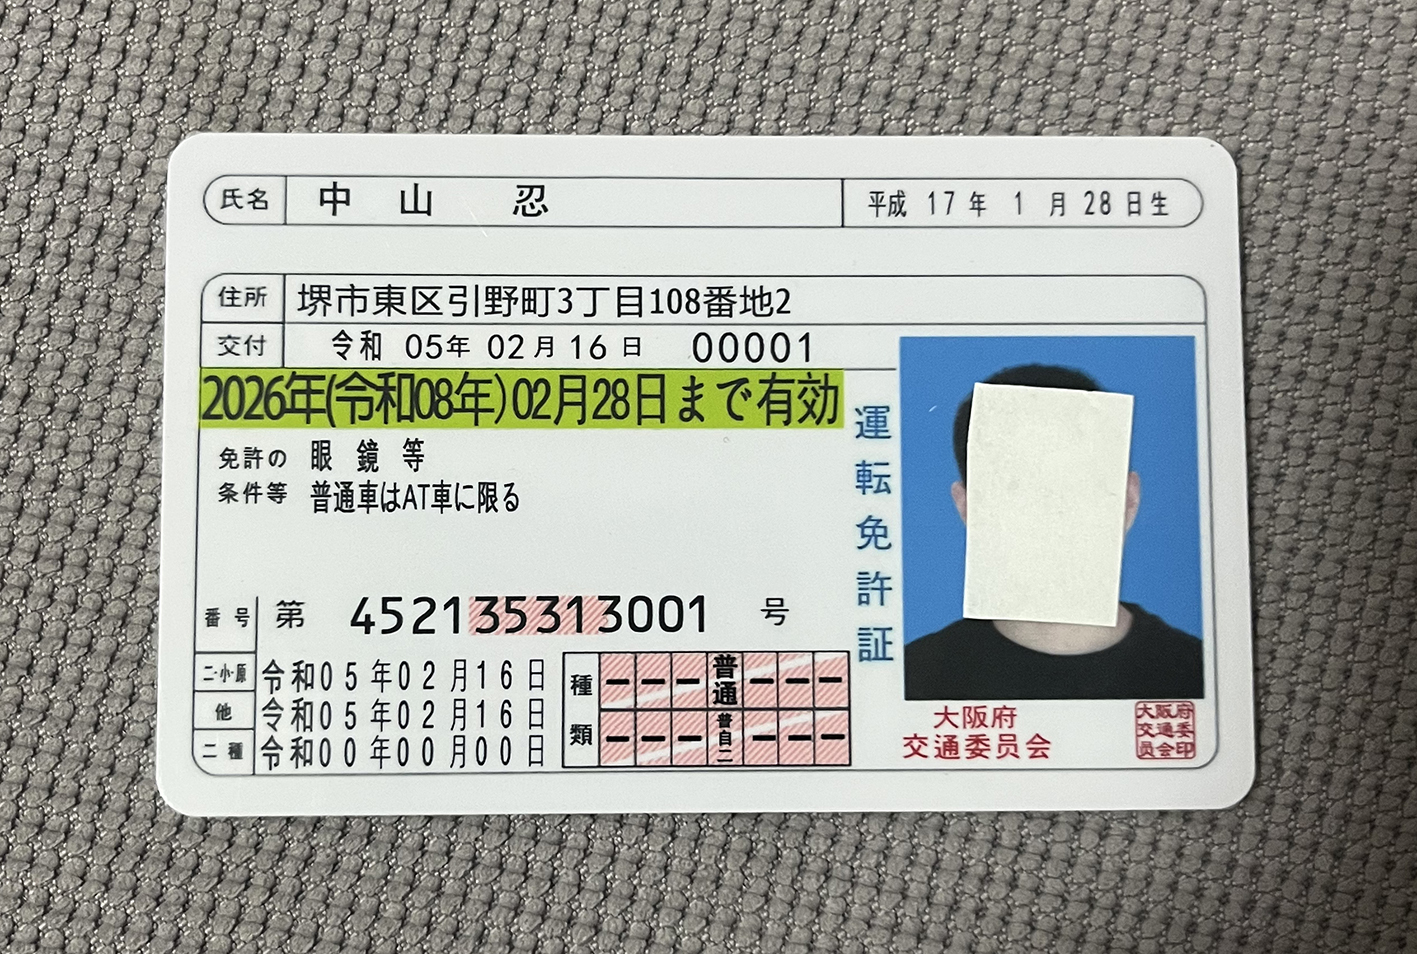 日本驾驶证.jpg 日本驾驶证实物图 亚洲